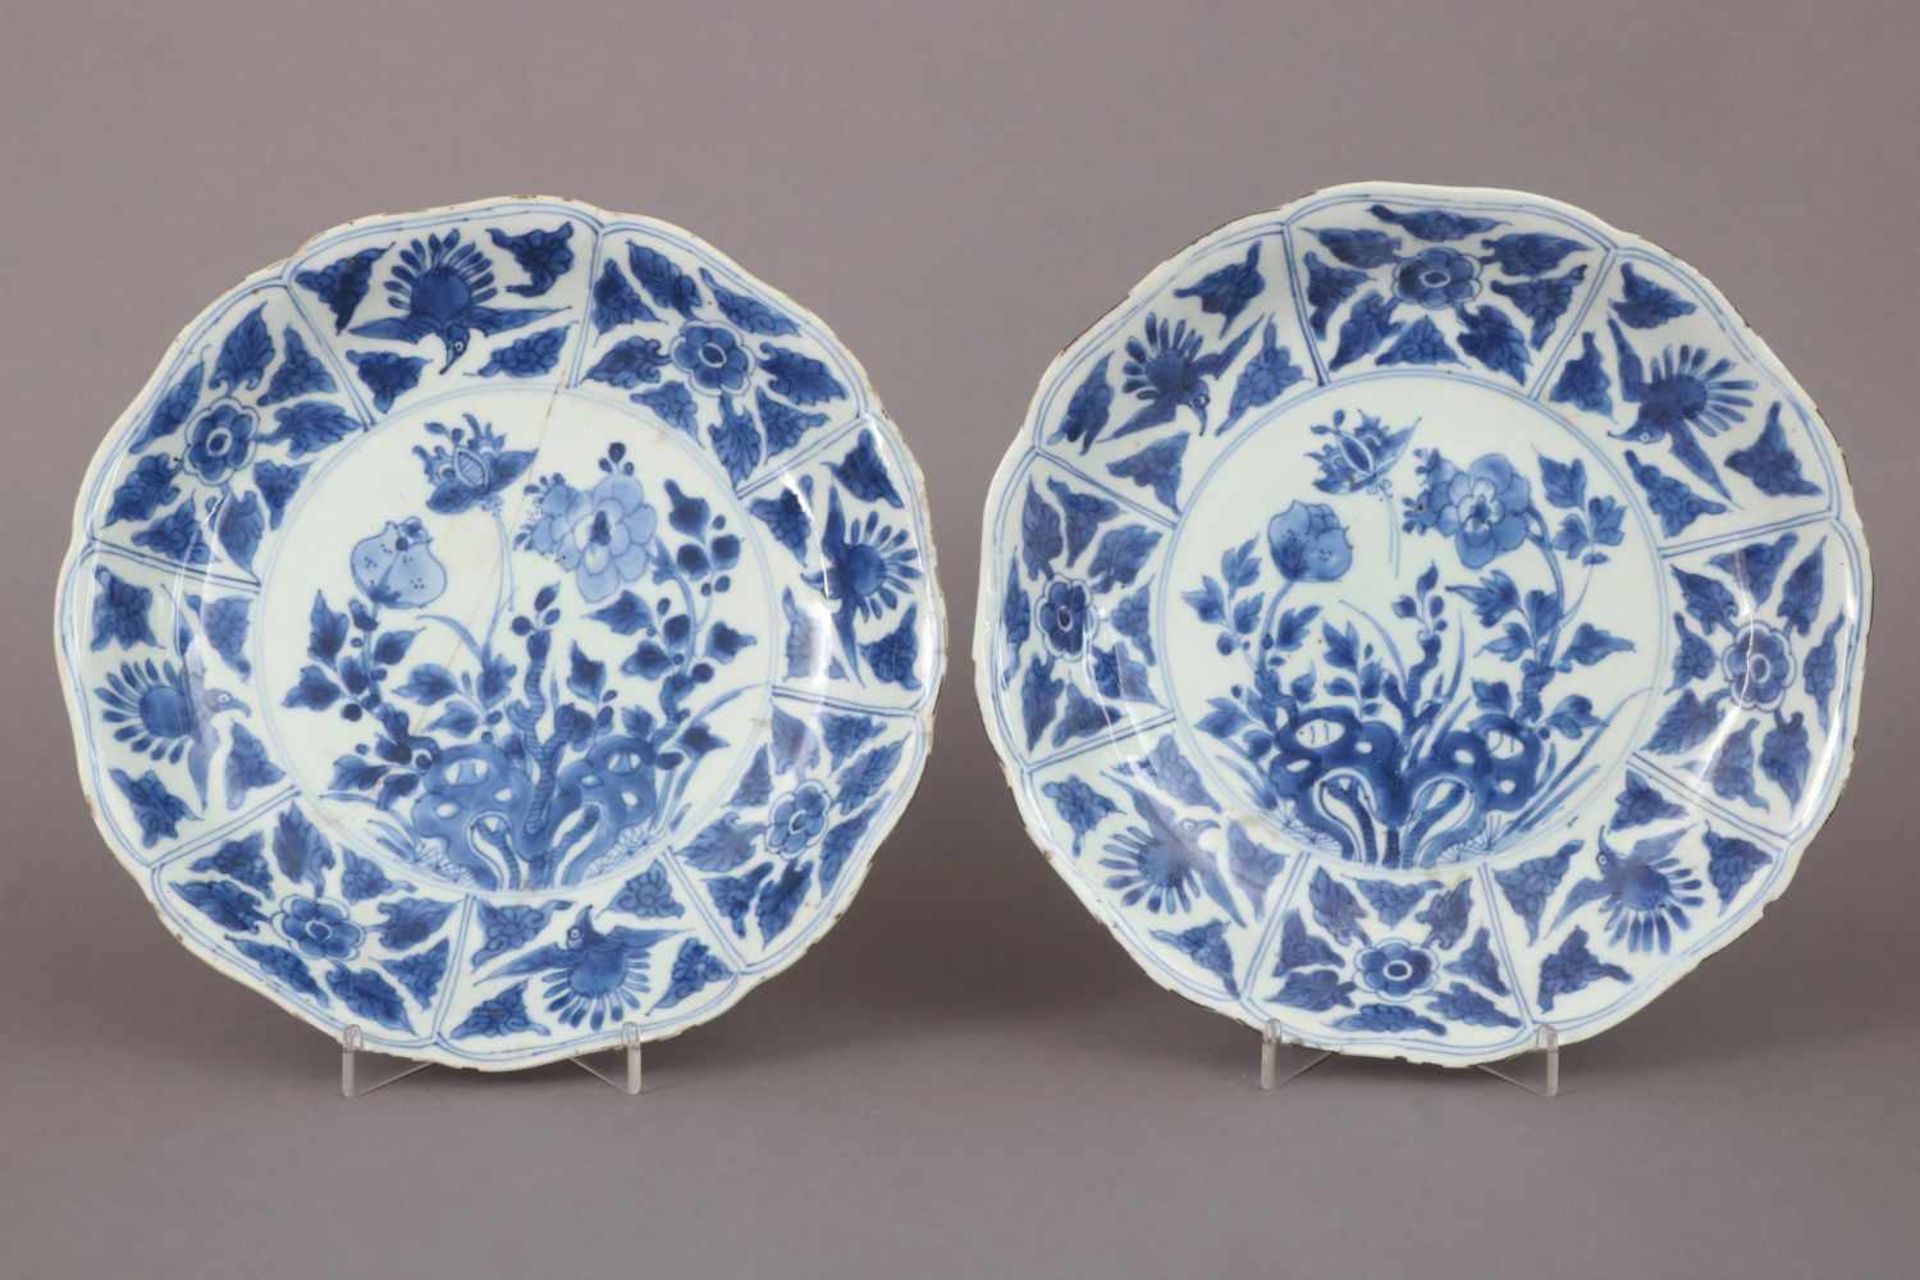 Paar chinesische TellerPorzellan, wohl 18. Jhdt., Blaumalerei, passige, leicht vertiefte Teller